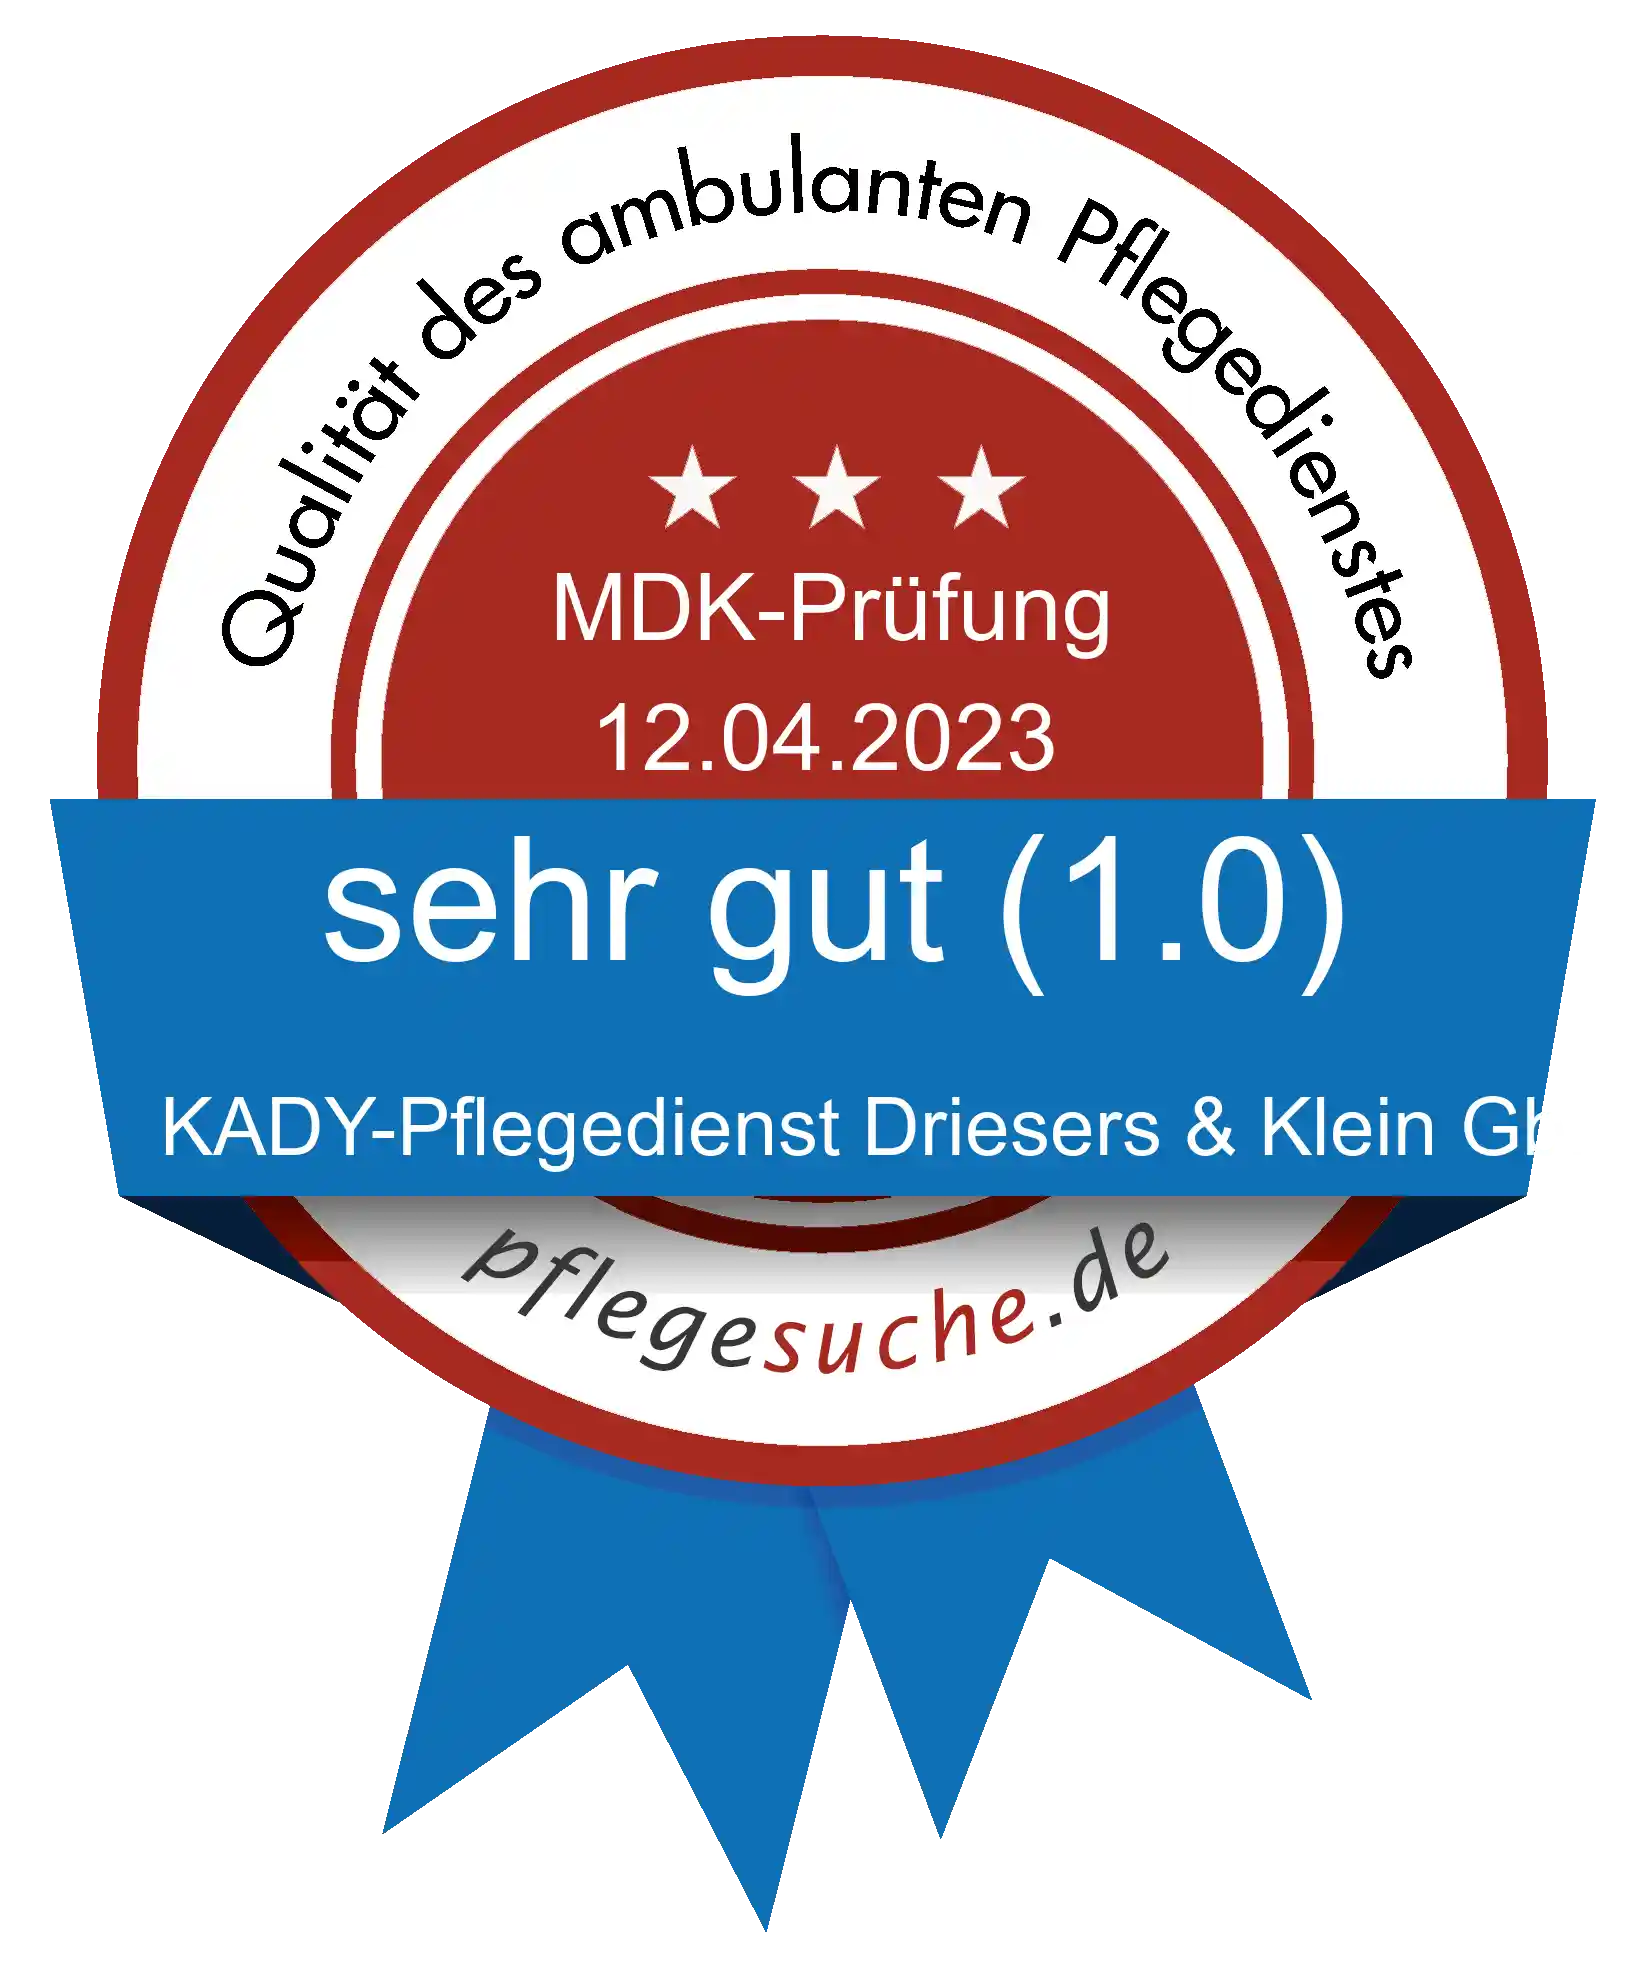 Siegel Benotung: KADY-Pflegedienst Driesers & Klein GbR